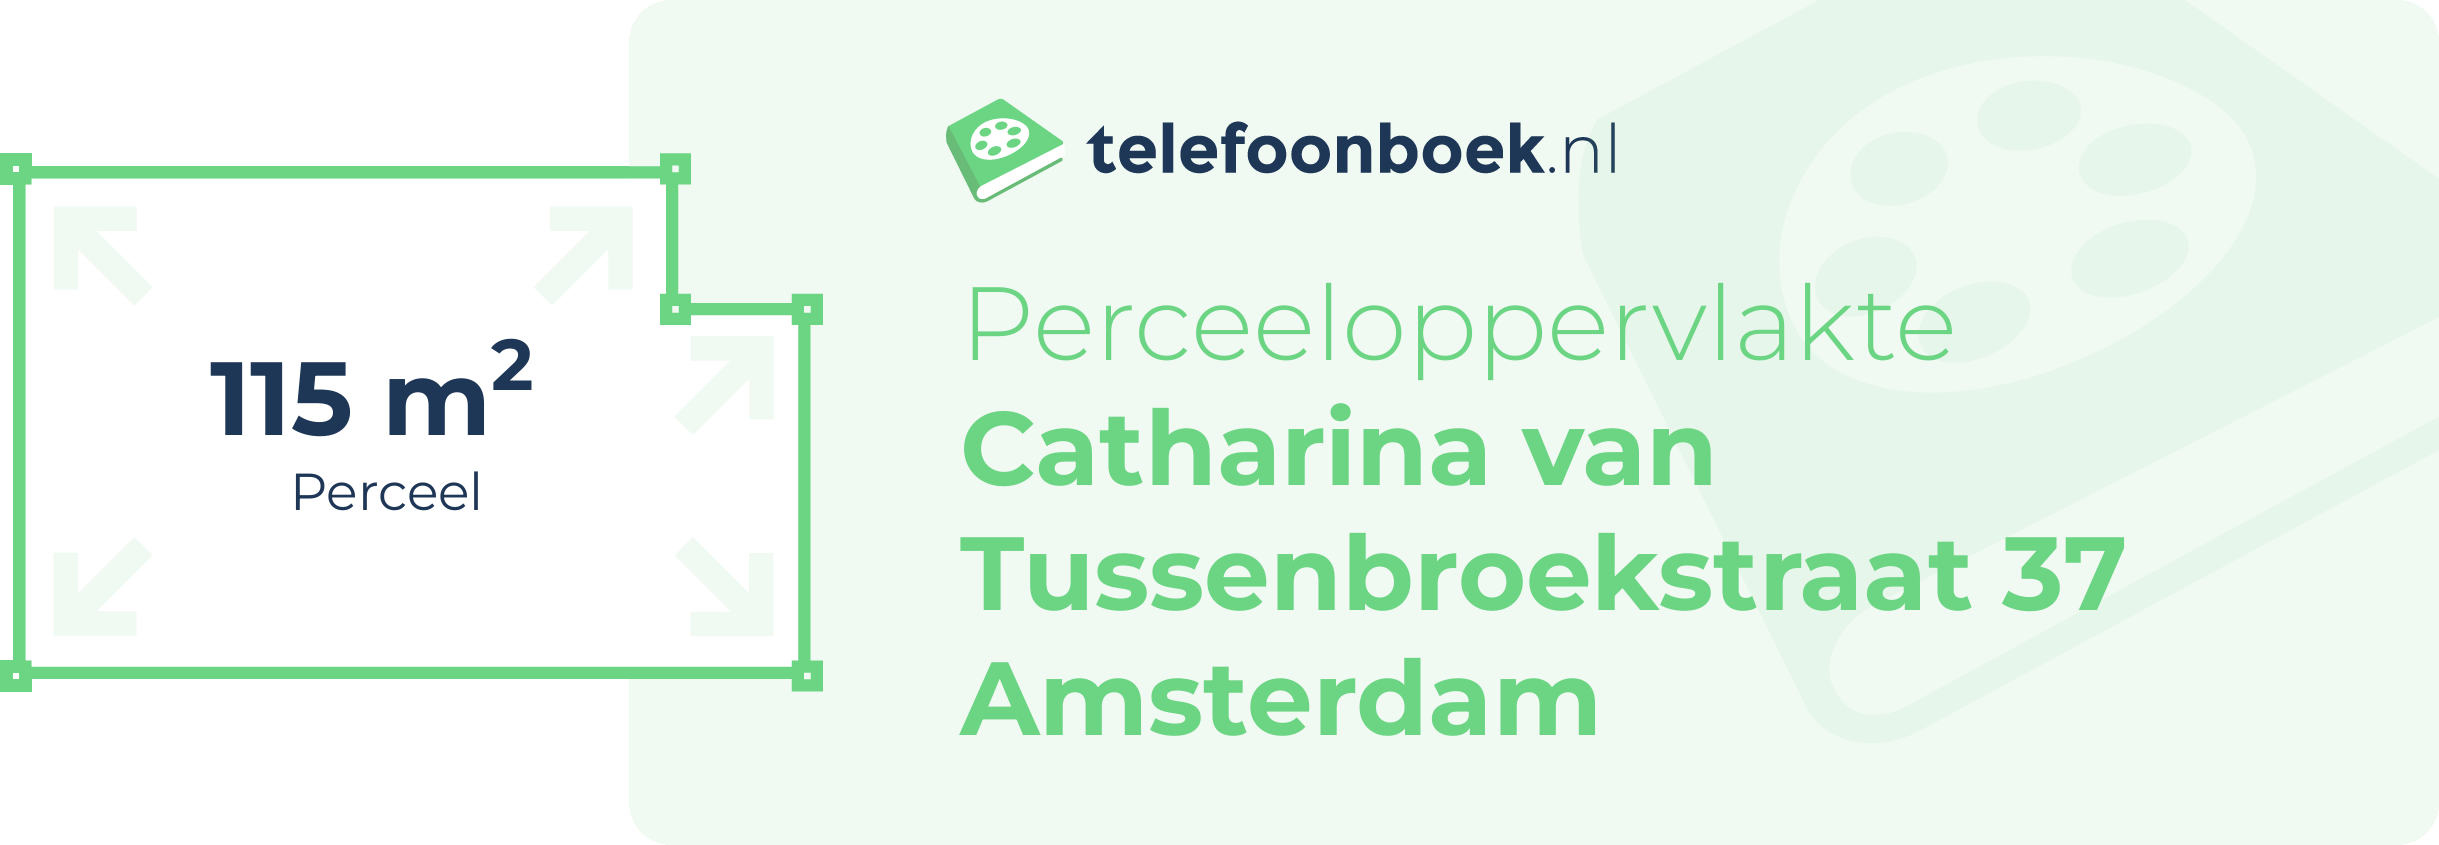 Perceeloppervlakte Catharina Van Tussenbroekstraat 37 Amsterdam